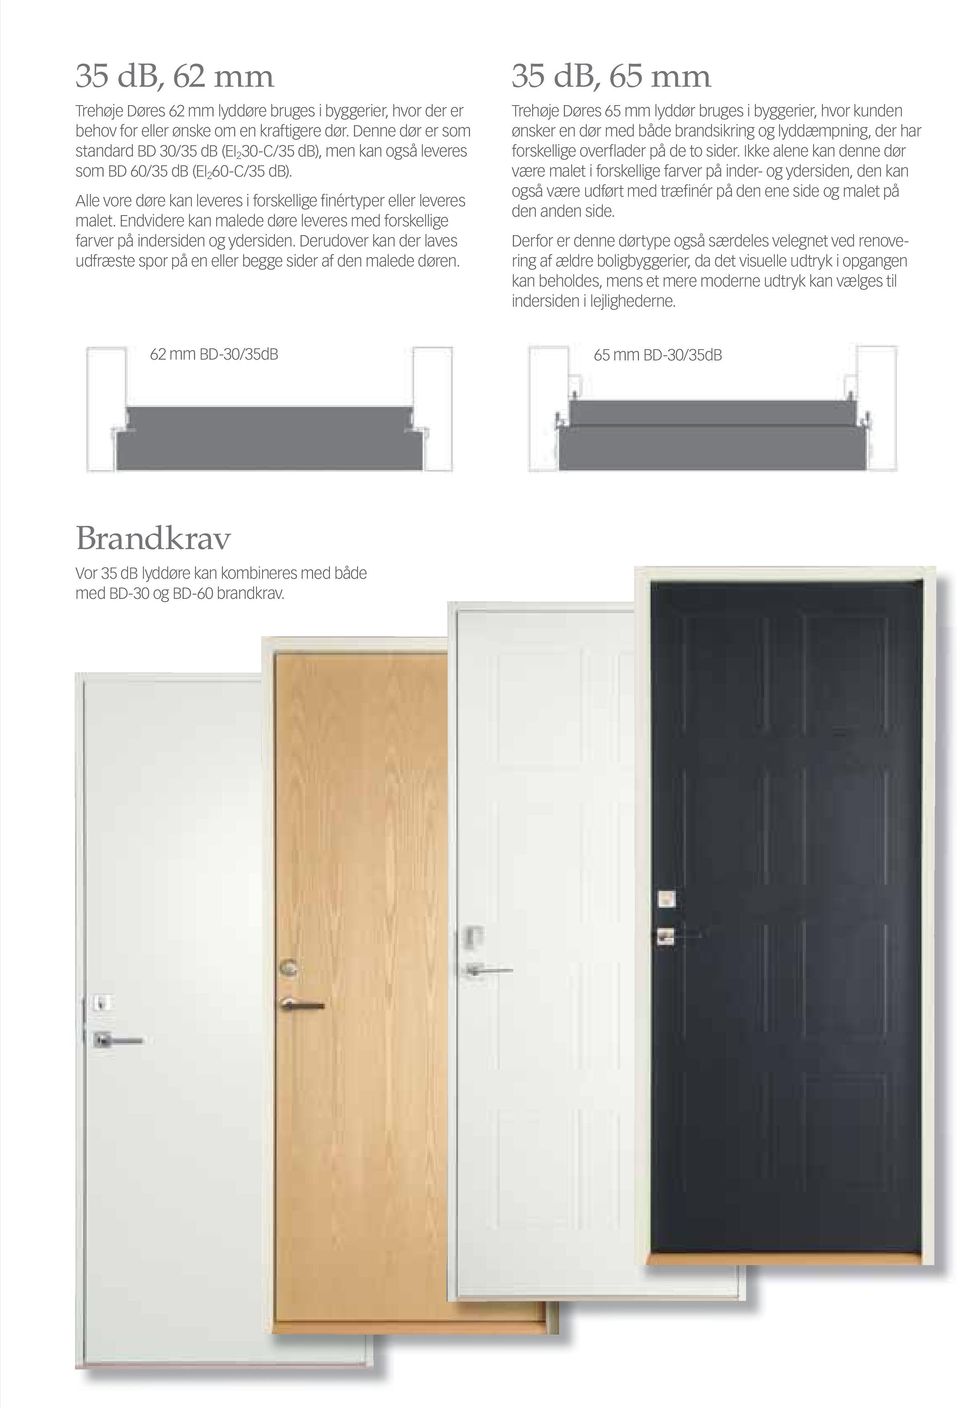 Endvidere kan malede døre leveres med forskellige farver på indersiden og ydersiden. Derudover kan der laves udfræste spor på en eller begge sider af den malede døren.